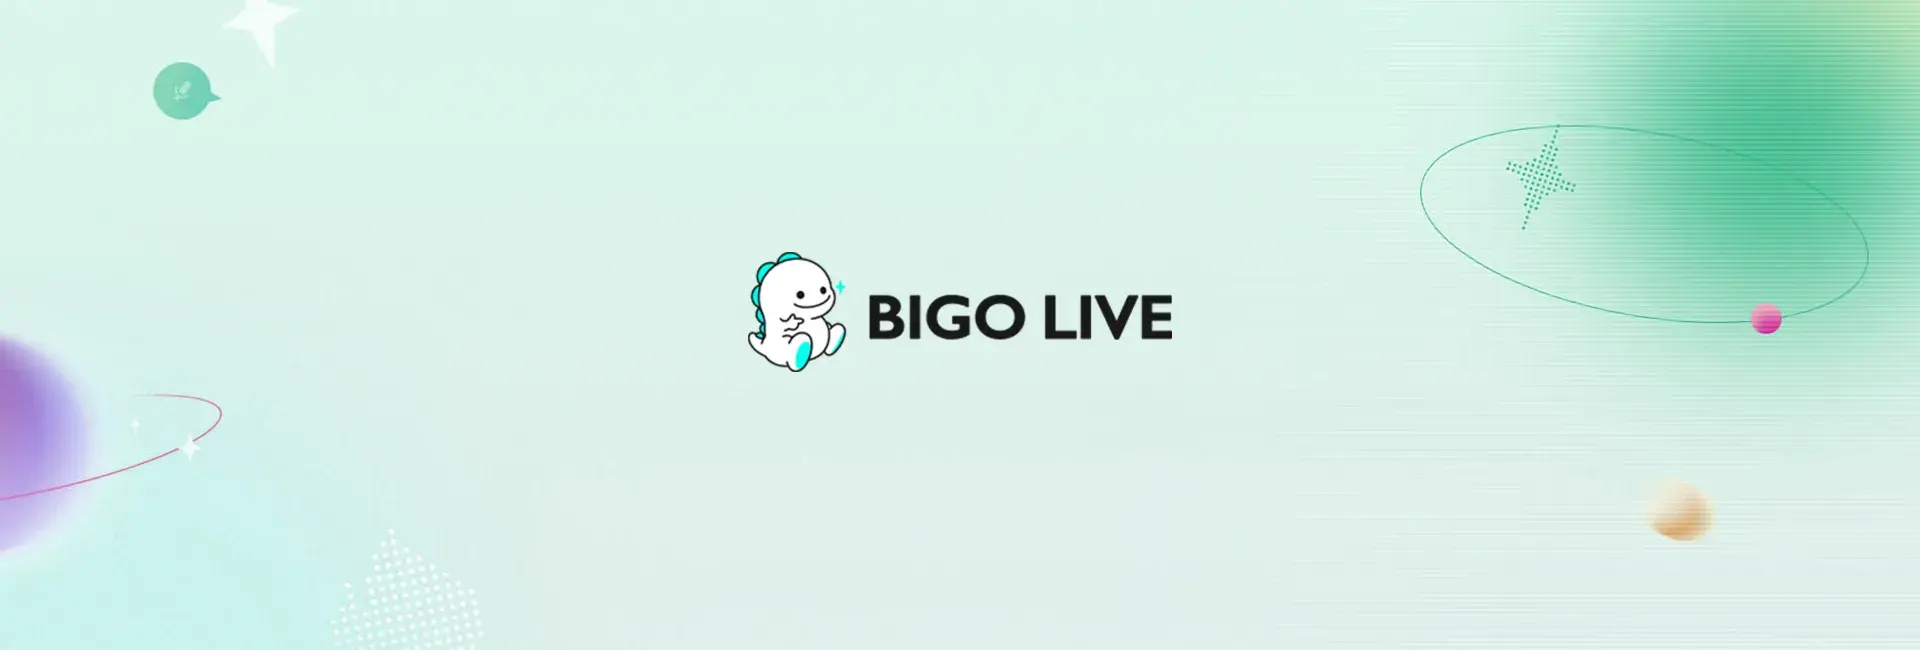 Bigo Live - 50 Diamonds (Global)	